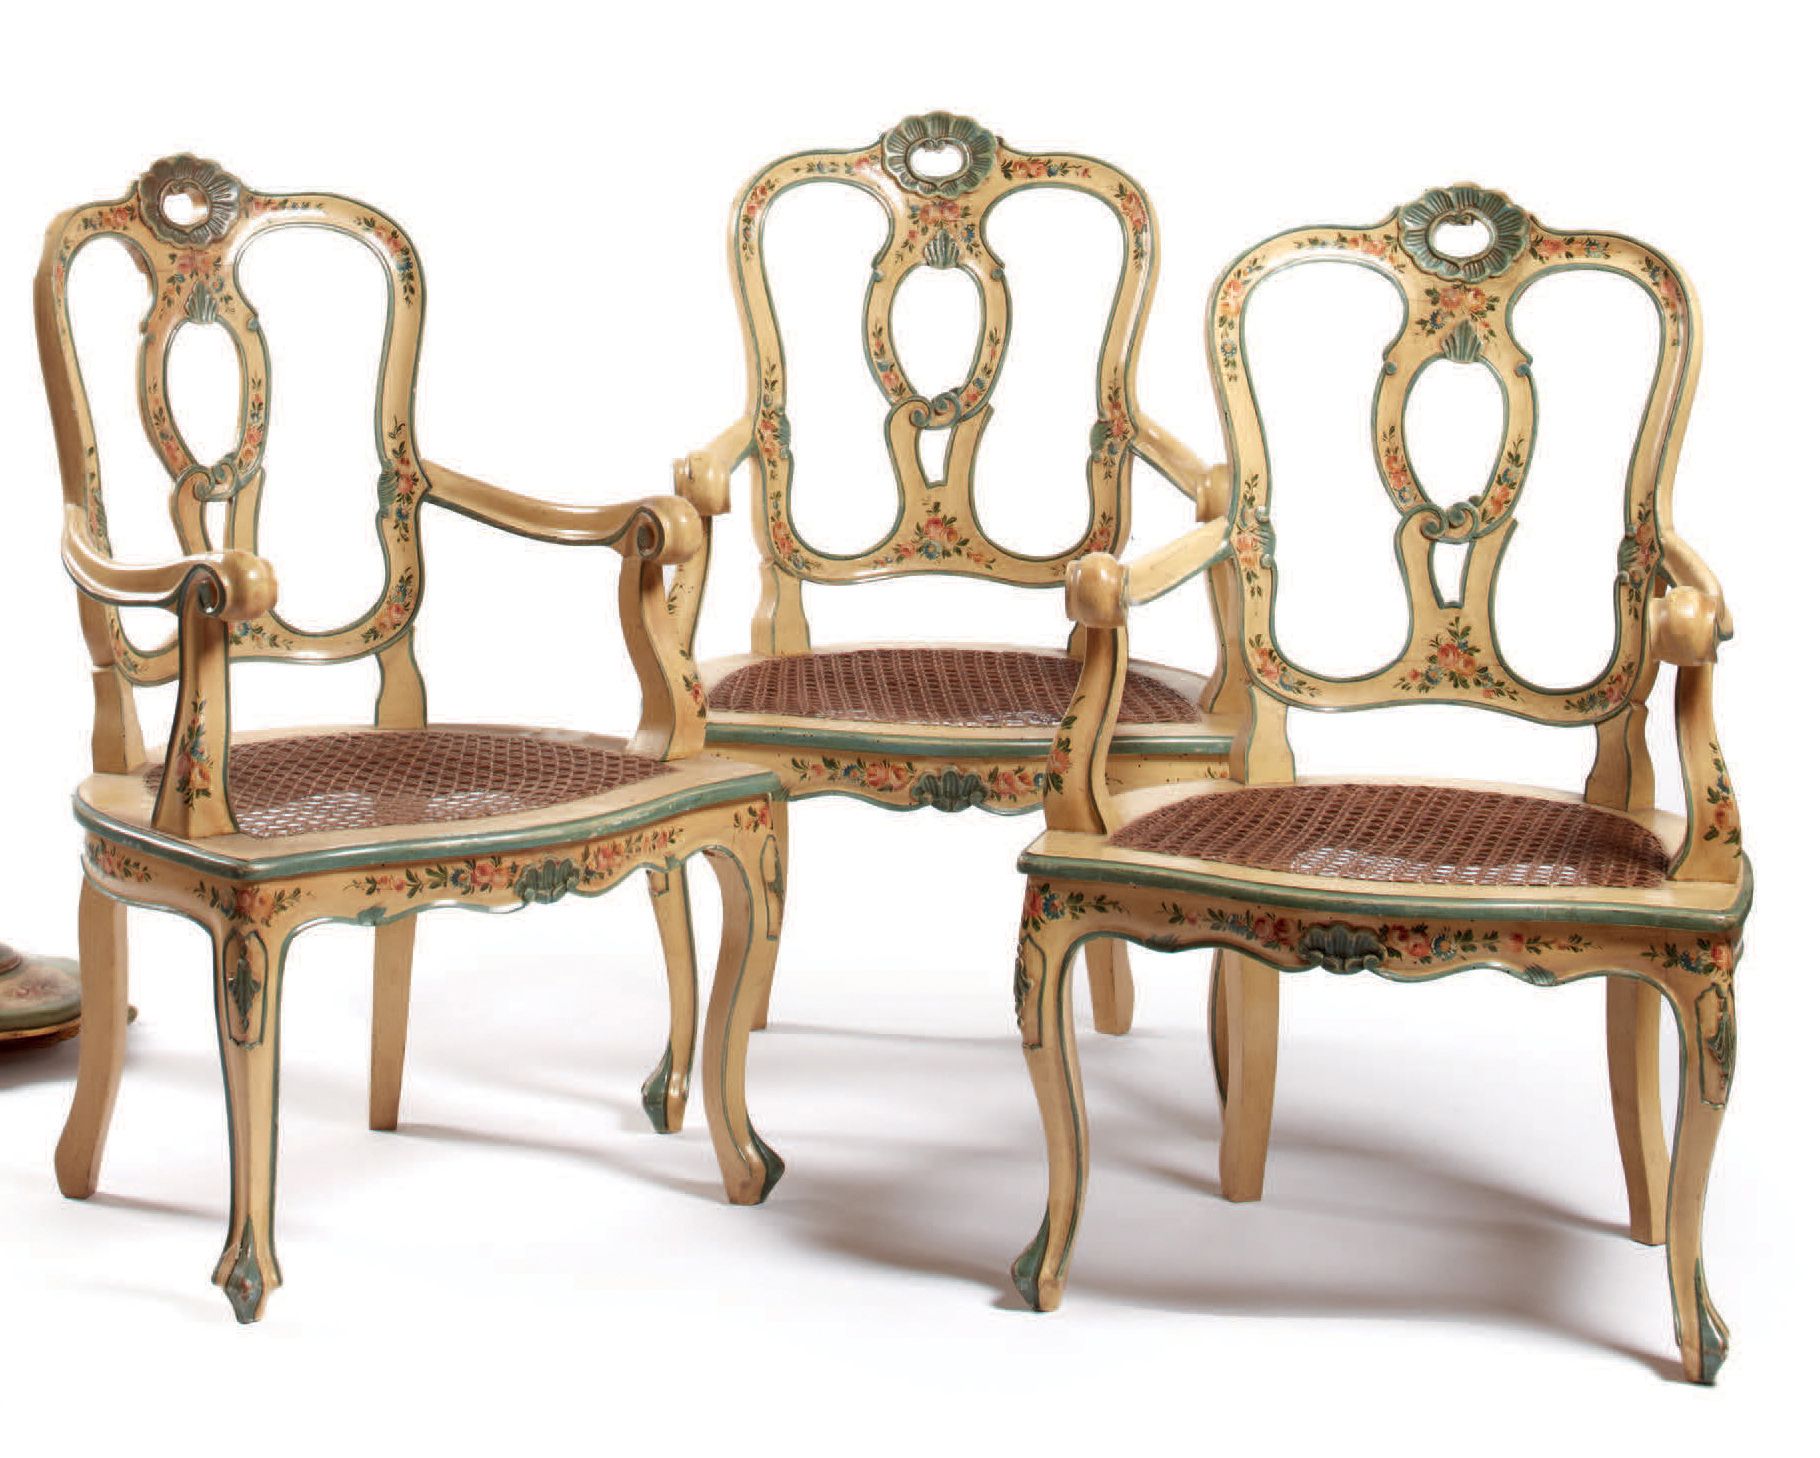 Null 
Quatre fauteuils/四把扶手椅，木雕，奶油色和蓝色漆面，带多色花纹装饰，开放式靠背，波浪形的扶手和腿，环形座椅，18世纪威尼斯风格

&hellip;